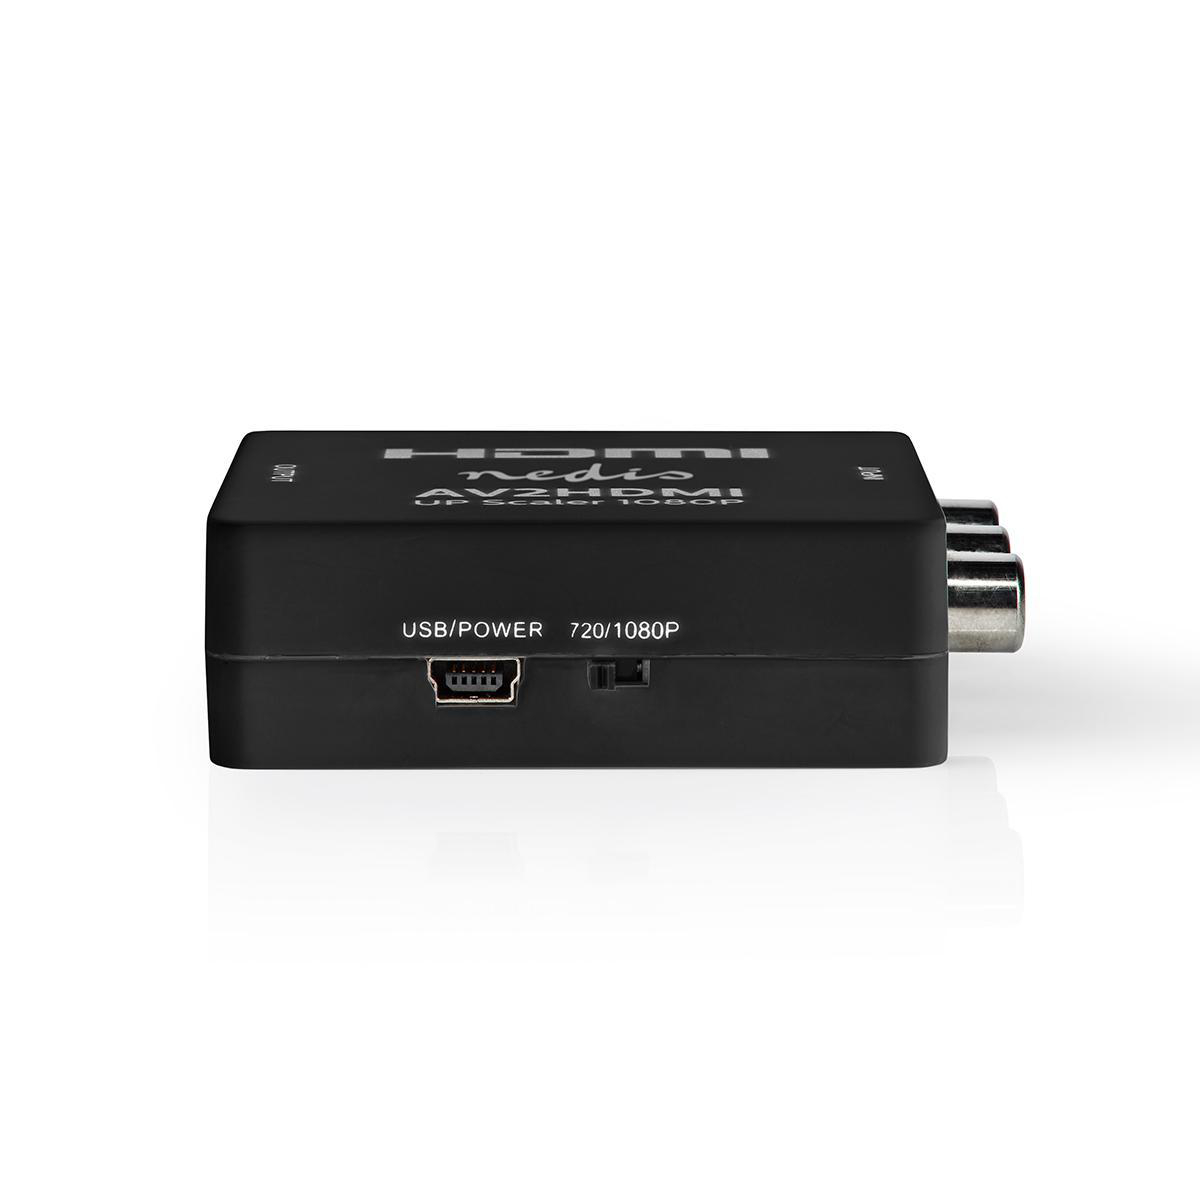 NEDIS HDMI Converter VCON3456AT